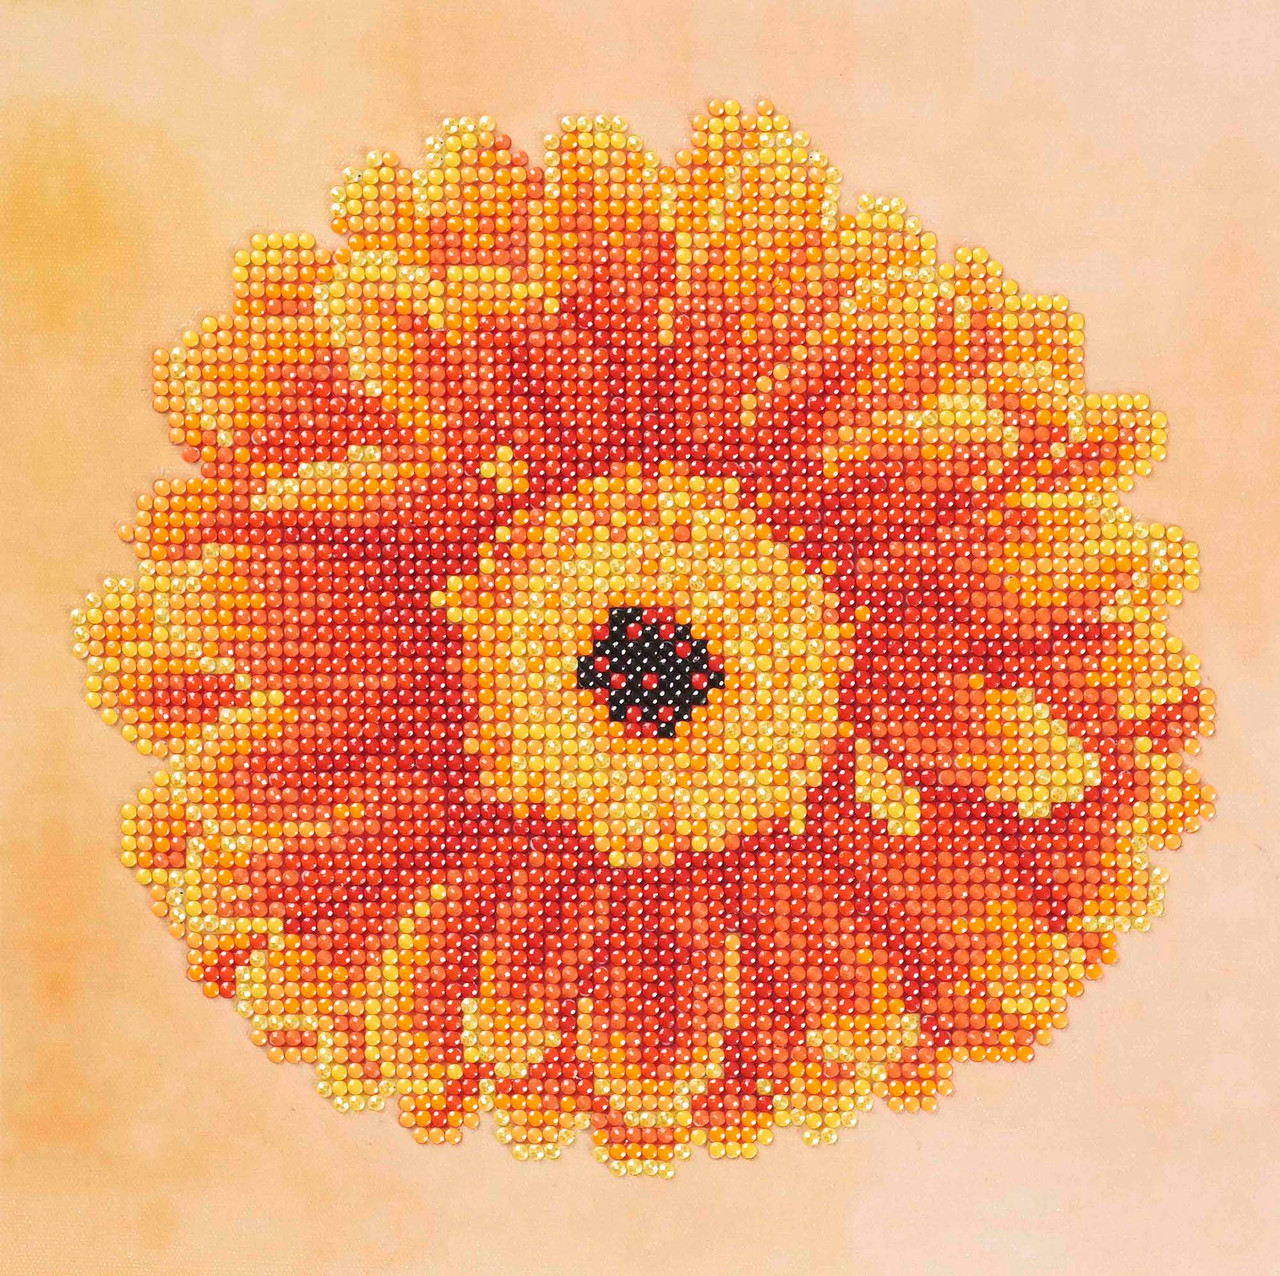 Diamond Art Kit 8x 8 Beginner Sunflower